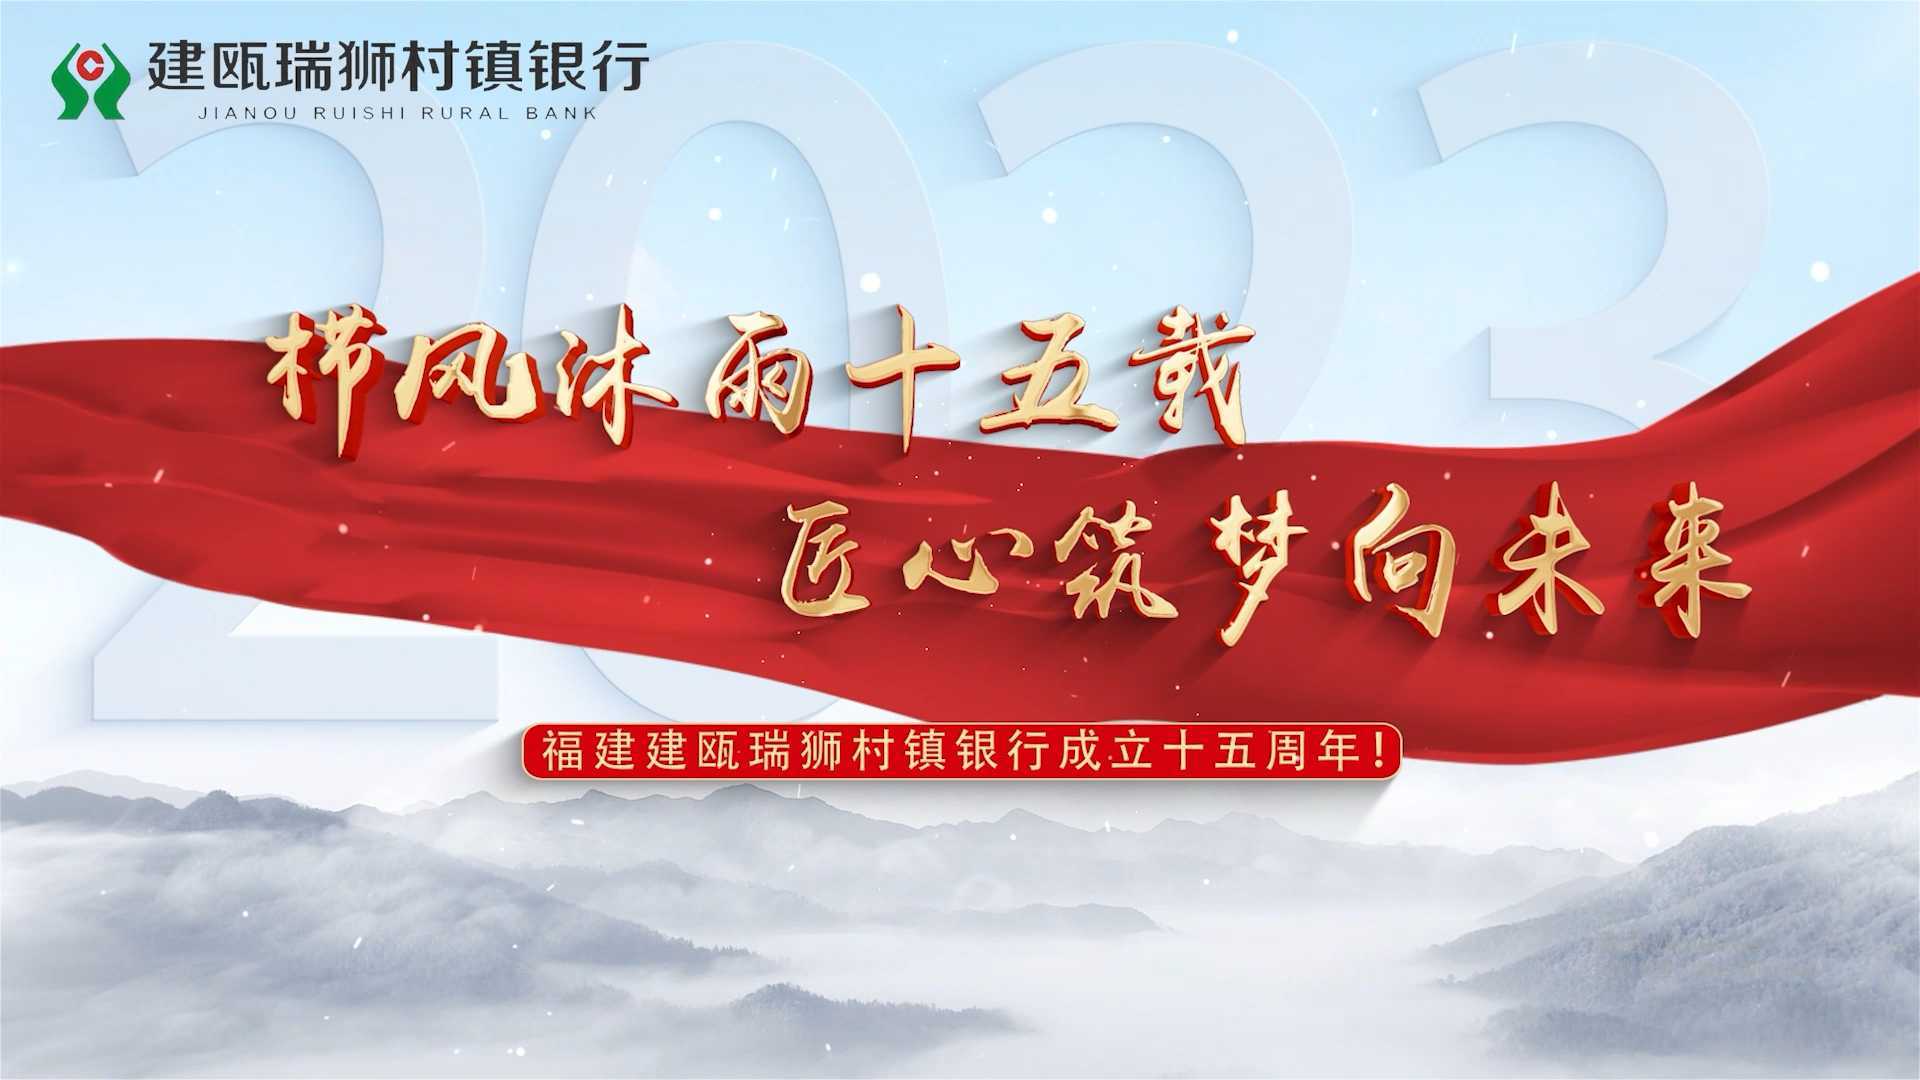 建瓯瑞狮银行十五周年宣传片